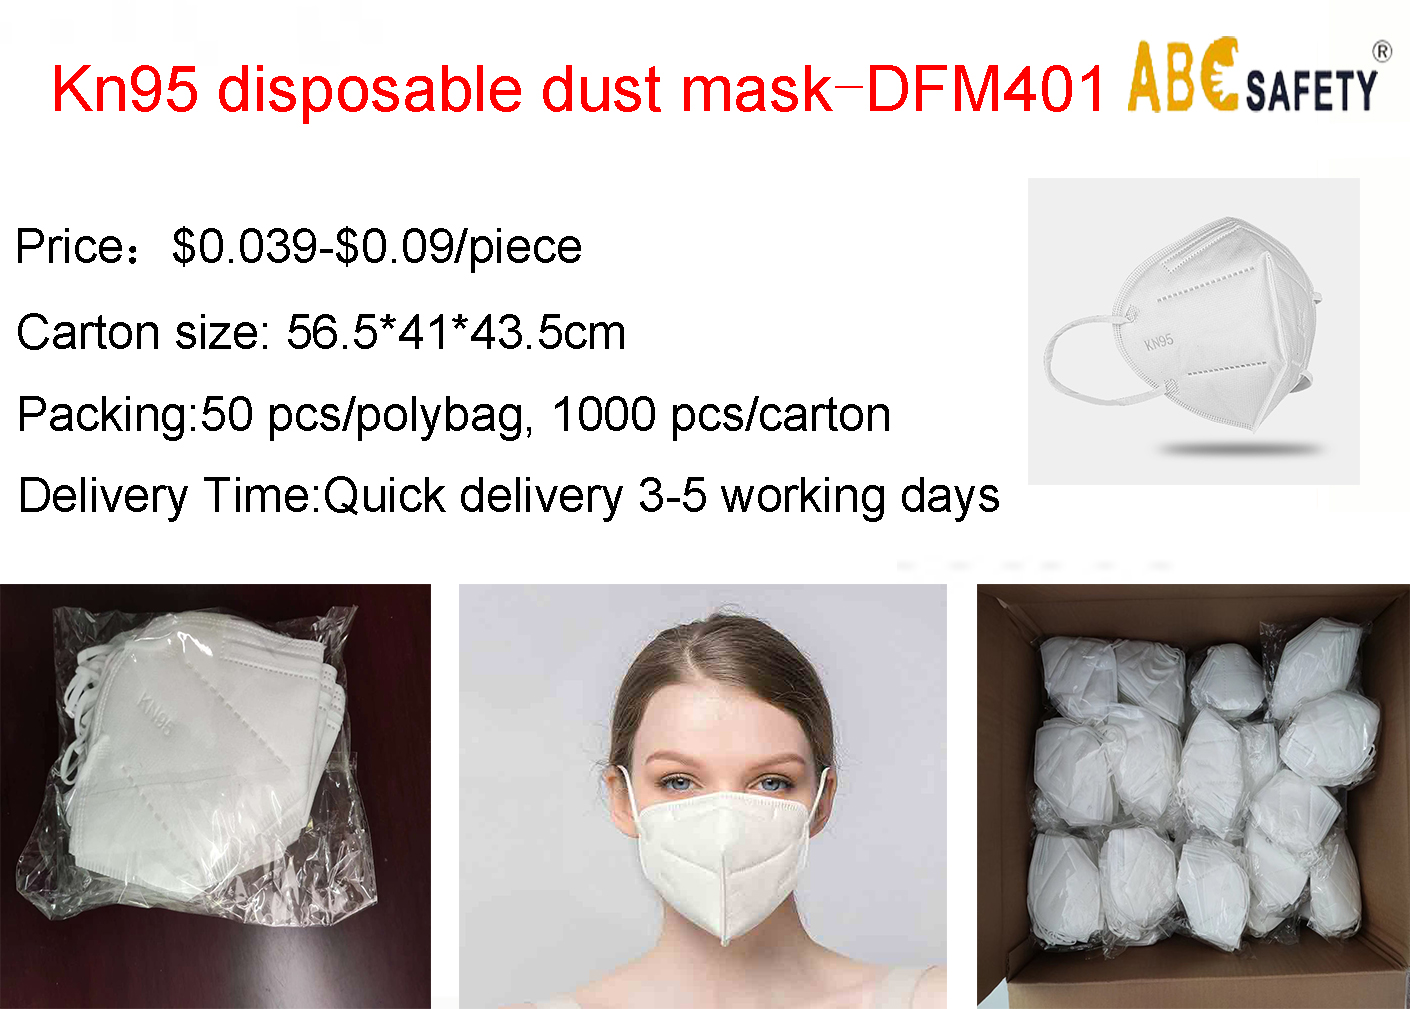 Mask sale price